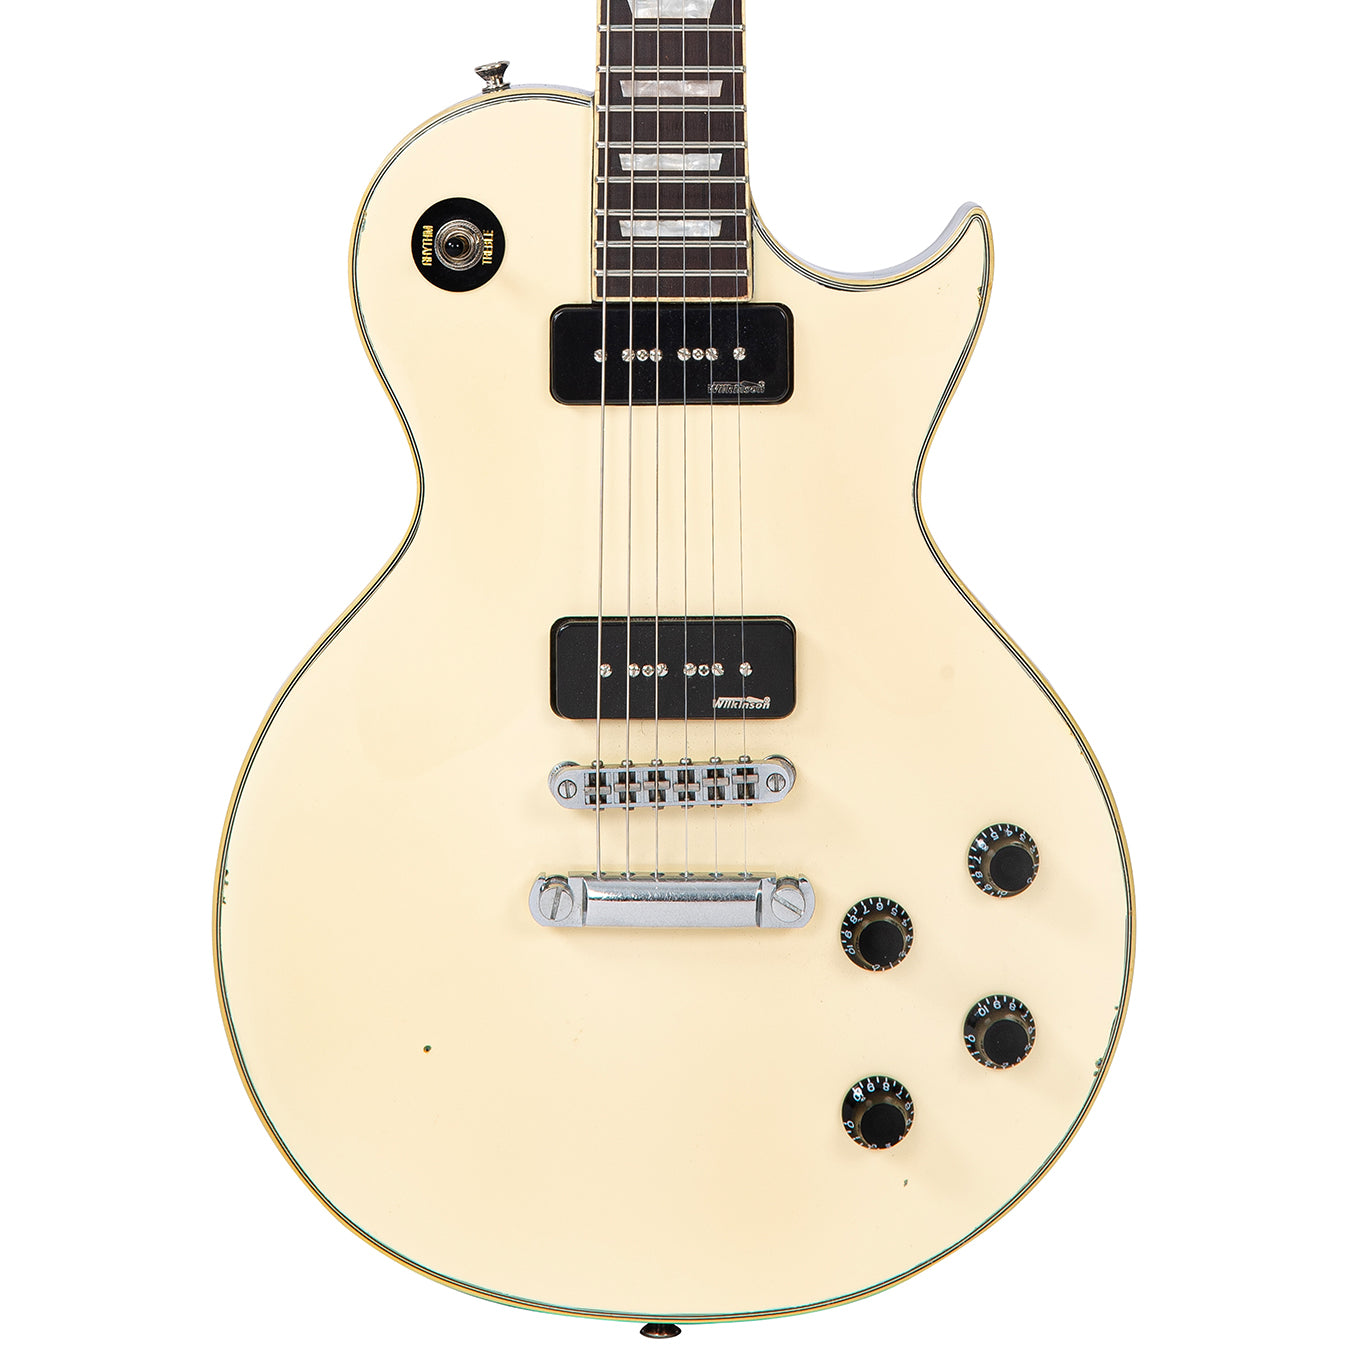 Vintage V100 ProShop Custom-Build ~ Light Ageing ~ Vintage White, Electric Guitars for sale at Richards Guitars.